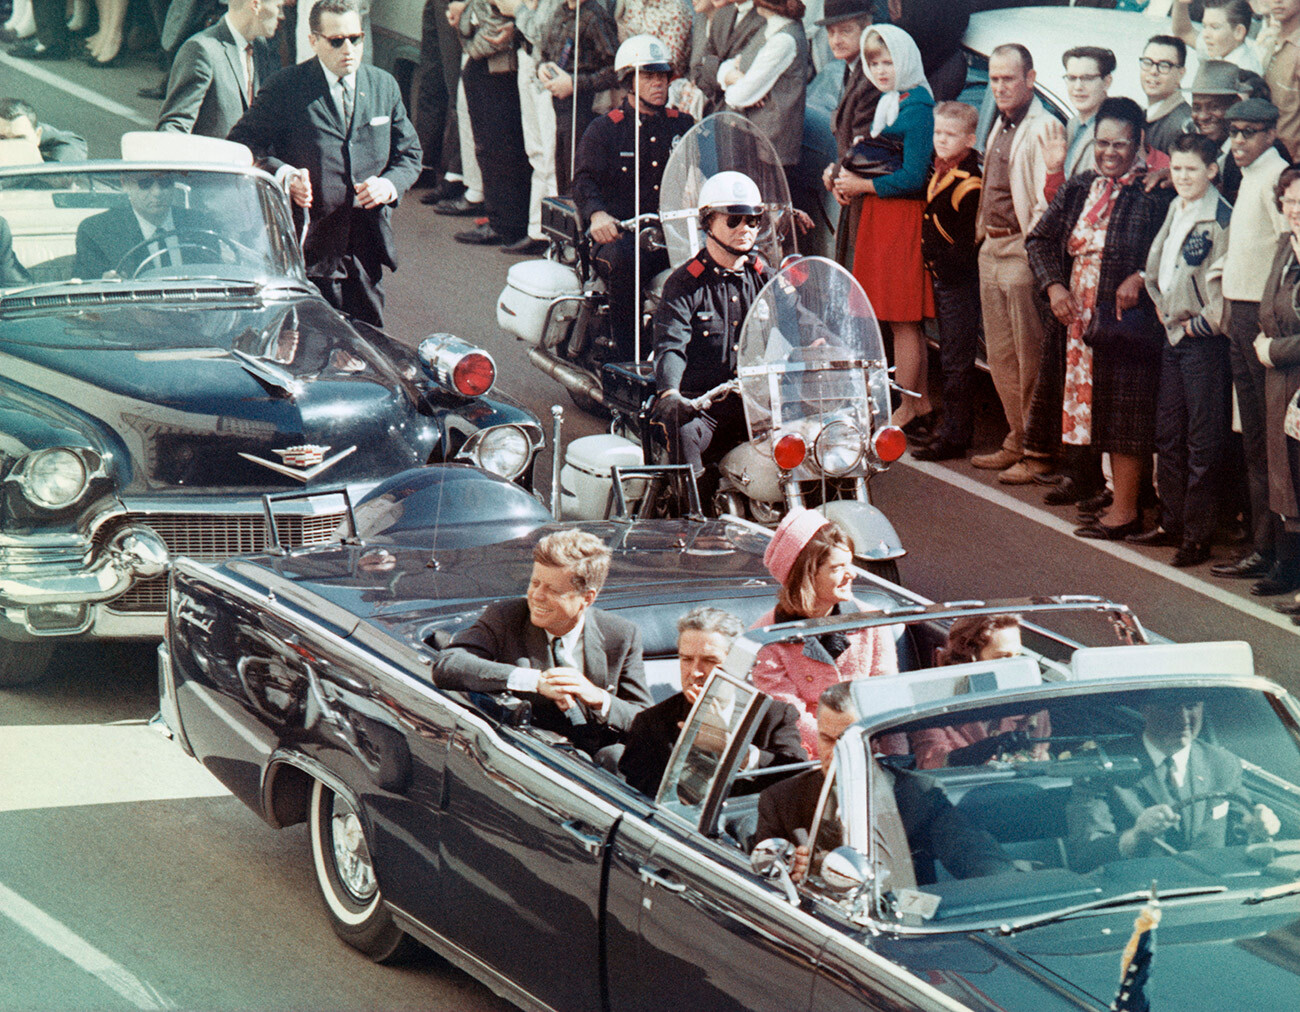 Predsednik John F. Kennedy in njegova soproga se 22. novembra 1963 v Dallasu v Teksasu, med vožnjo, nasmehneta množici ljudi. Nekaj minut pozneje je bil predsednik umorjen, ko se je njegov avtomobil peljal skozi trg Dealey Plaza.